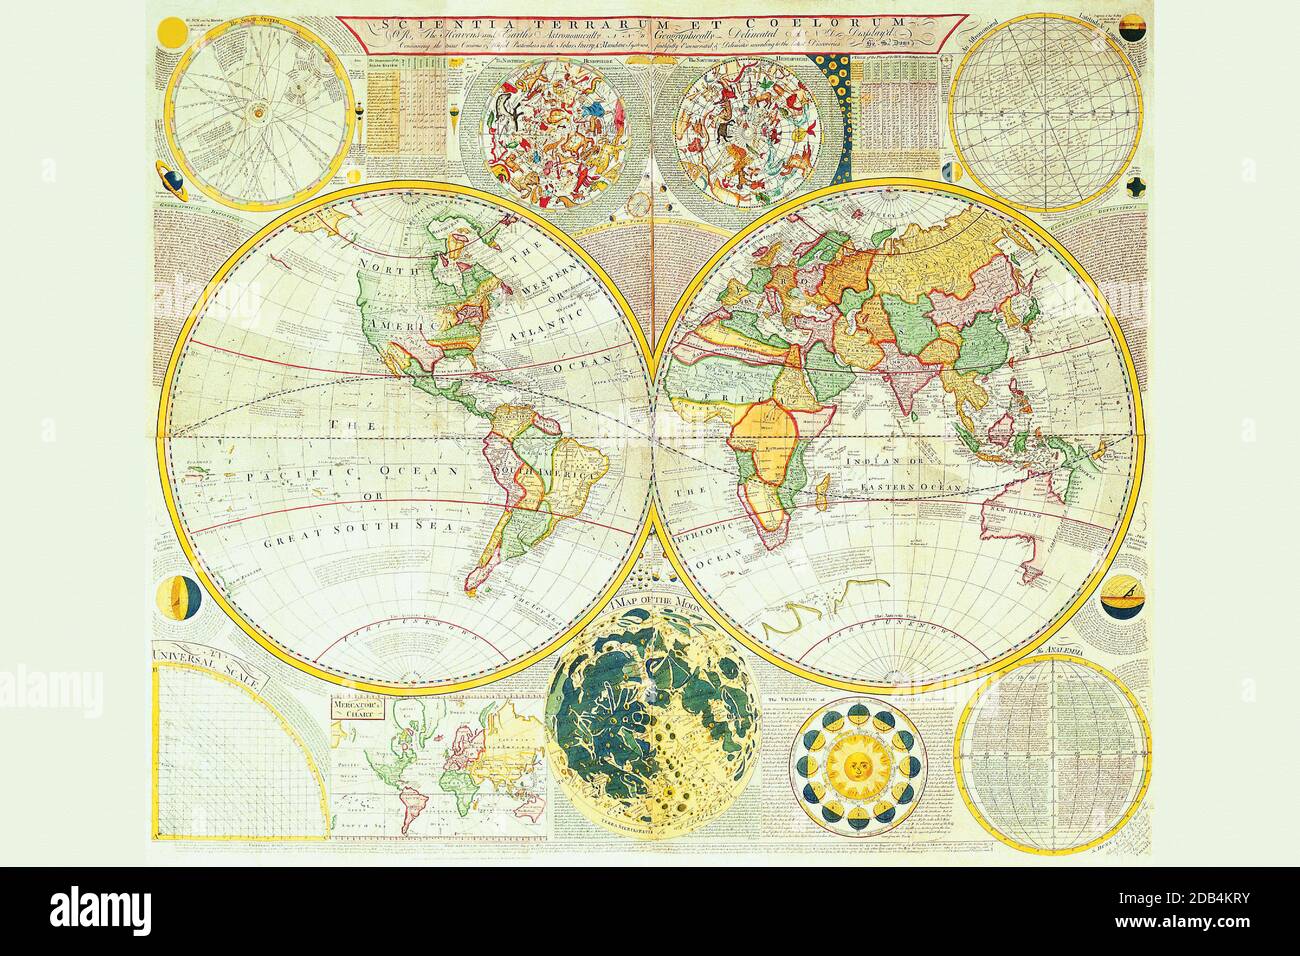 Samuel Dunn était mathématicien, enseignant, astronome et cartographe, travaillant à Londres en 1770 et 1780. Son intérêt particulier était les problèmes de détermination de la longitude en mer, sur lesquels il a écrit un certain nombre de livres et de brochures. Le « nouvel atlas » était le principal atlas qu’il produisit, publié successivement par Robert Sayer et John Bennett, puis Sayer seul, puis par ses apprentis Laurie et Whittle. Les cartes sont hautement considérées pour leur exactitude et la compétence d'exécution, qui a permis l'incorporation de détails considérables. Banque D'Images